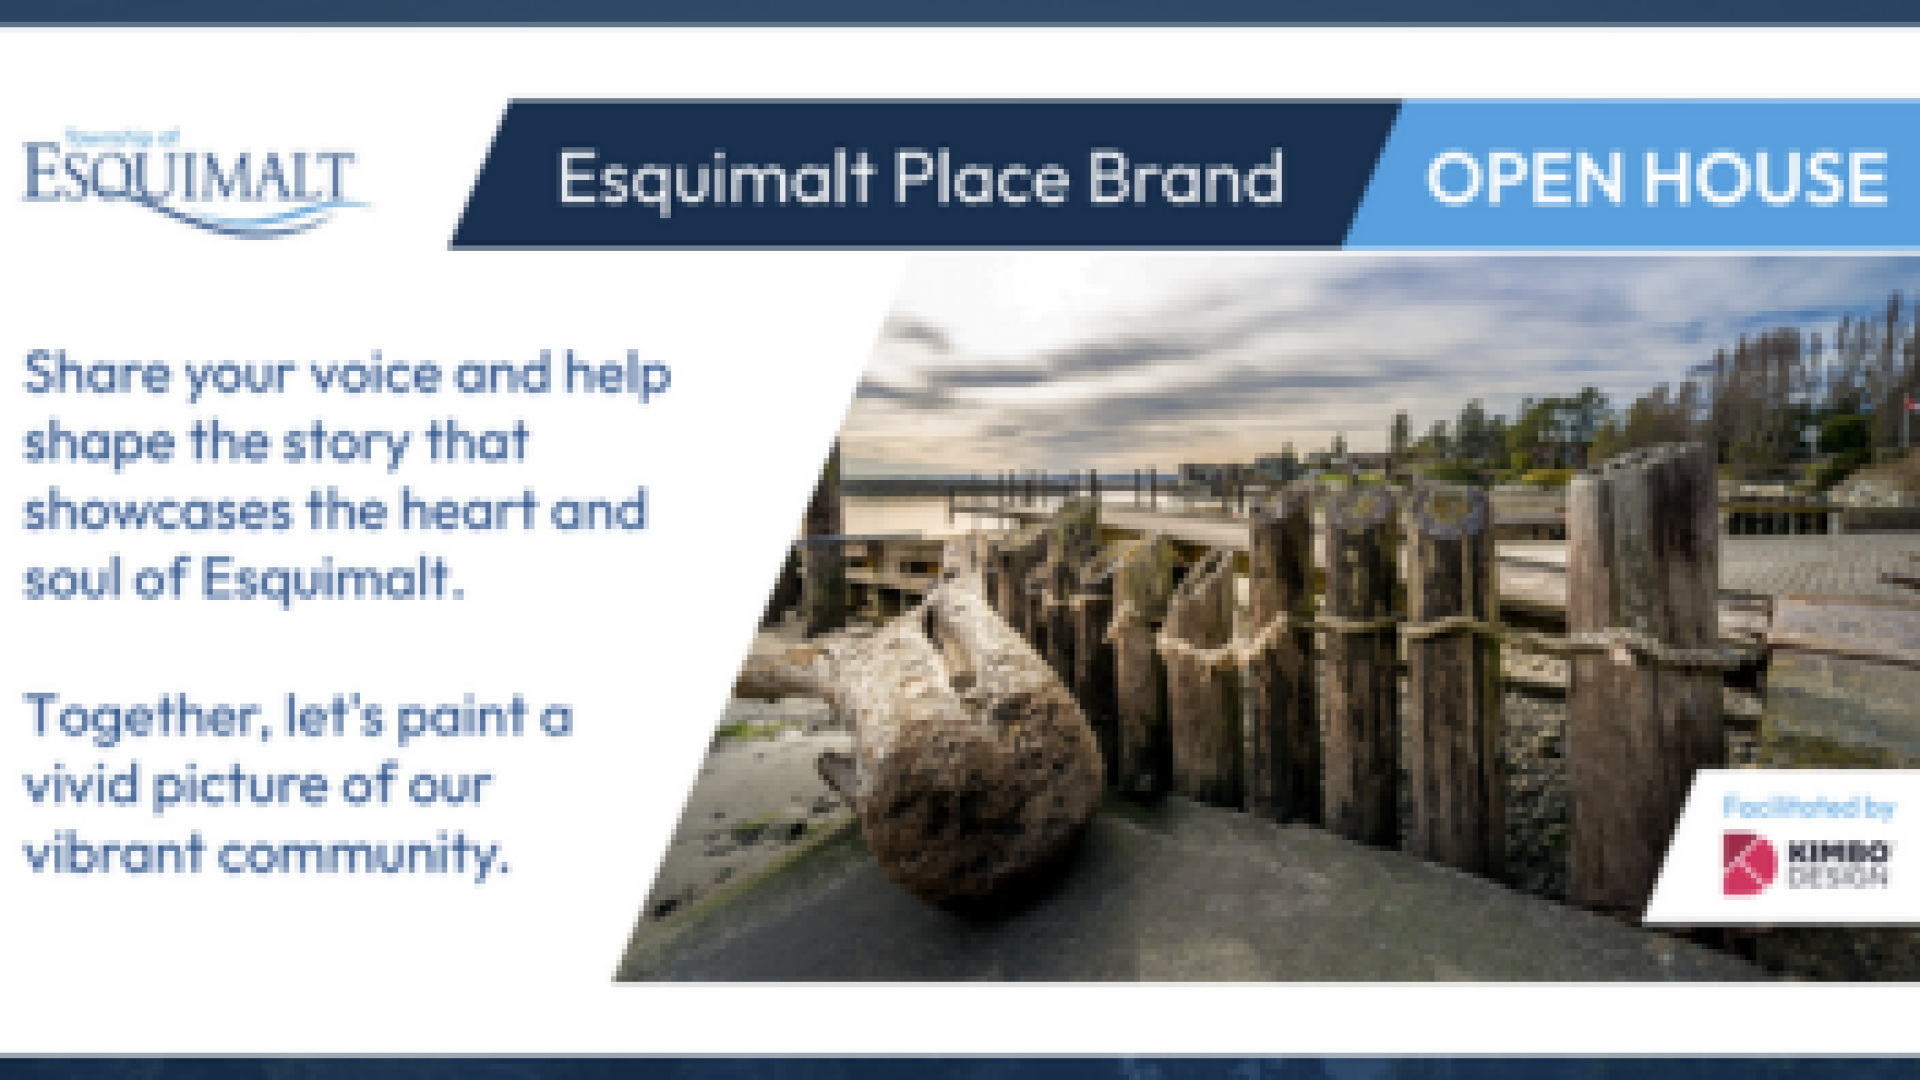 Open house Esquimalt Place Brand